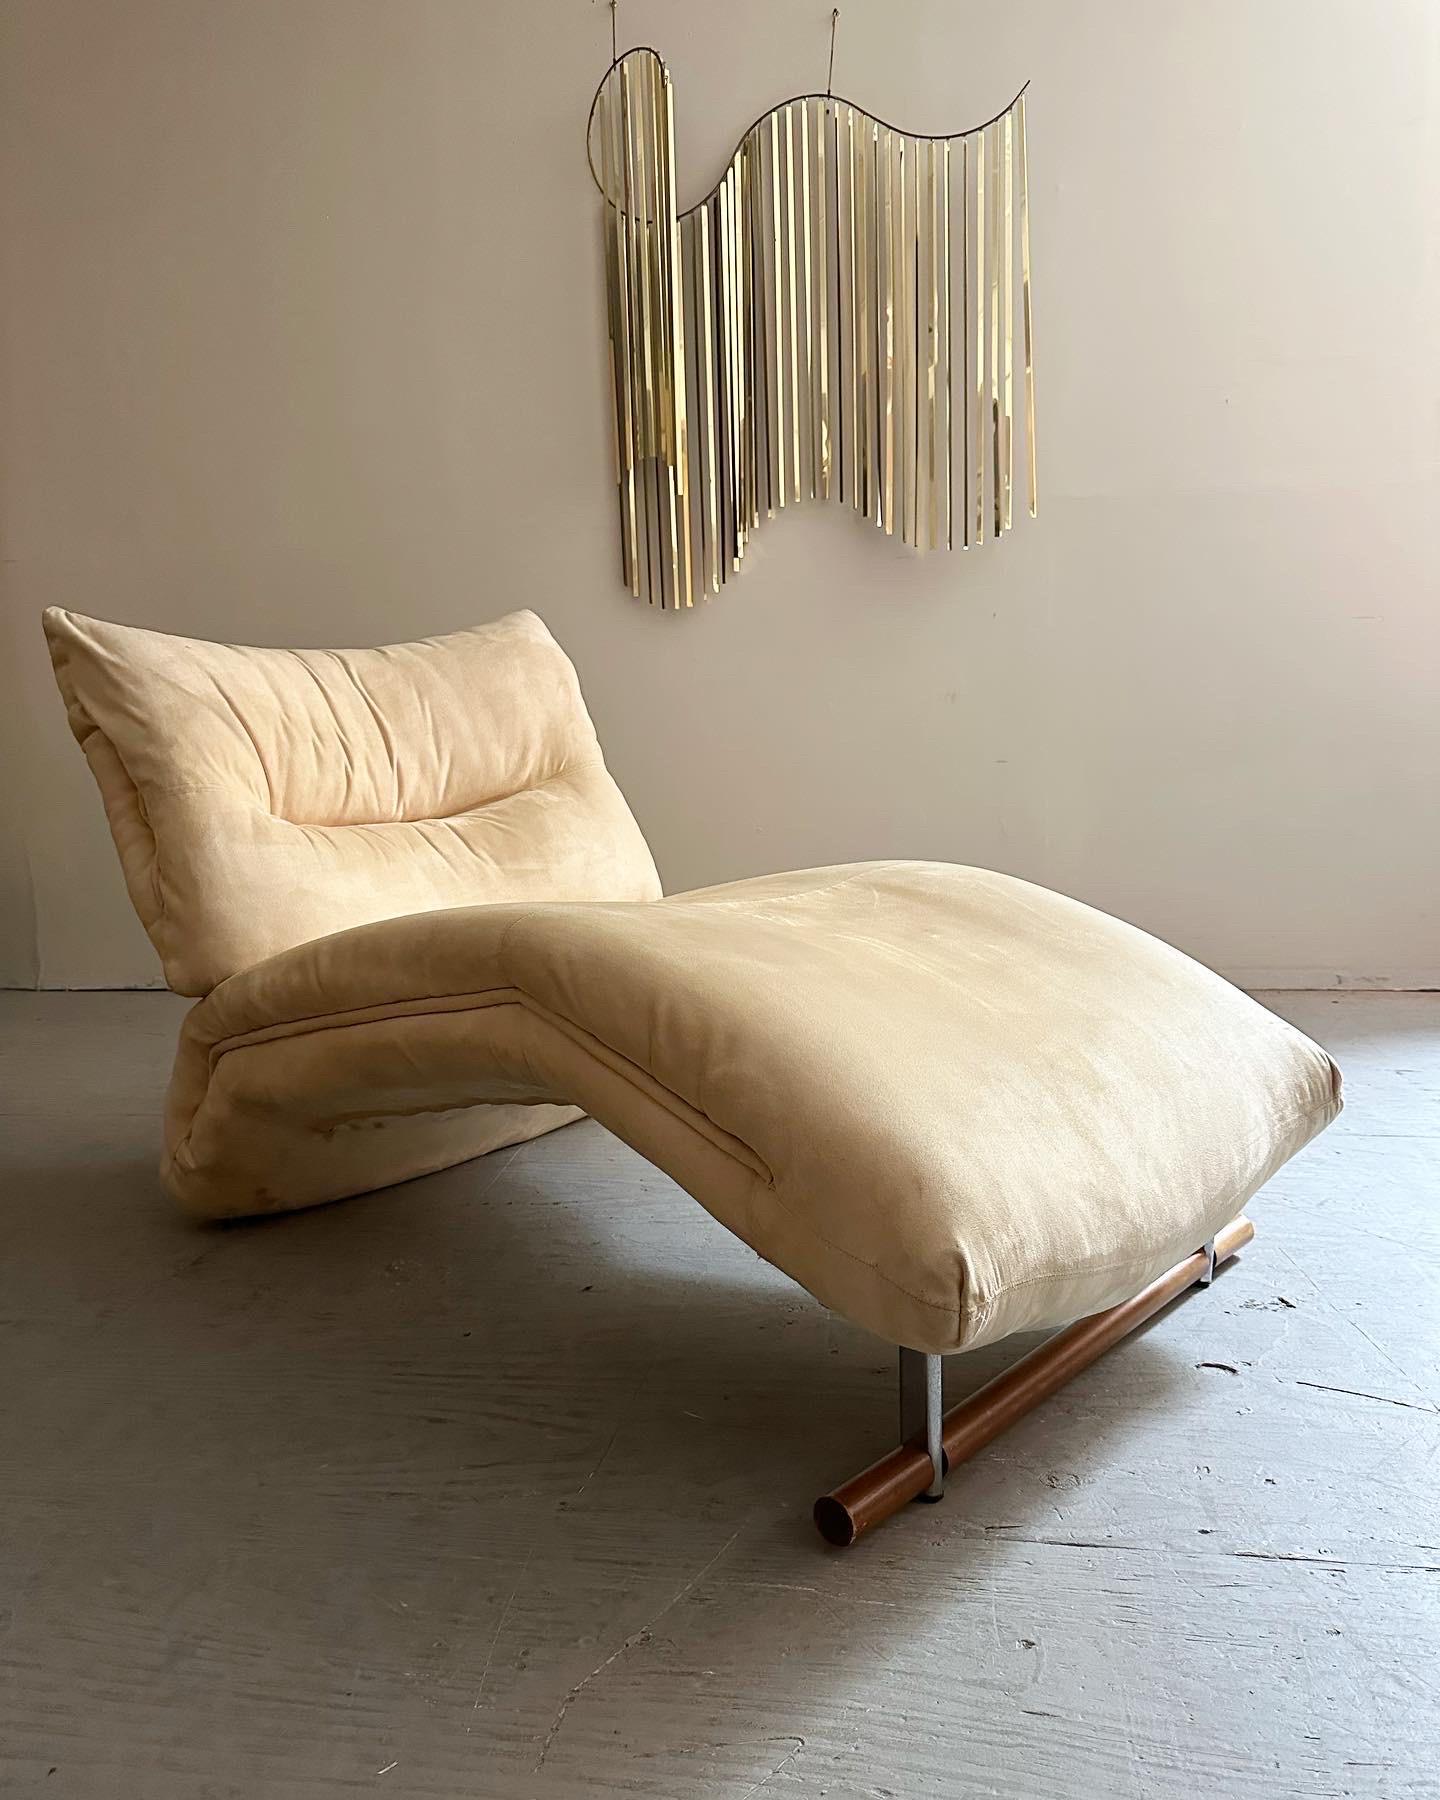 Cette magnifique chaise longue de style français présente un revêtement original en daim beige avec des détails uniques de passepoil. La chaise repose sur une poutre en bois massif avec des supports chromés. Il s'agit d'un ajout remarquable à tout